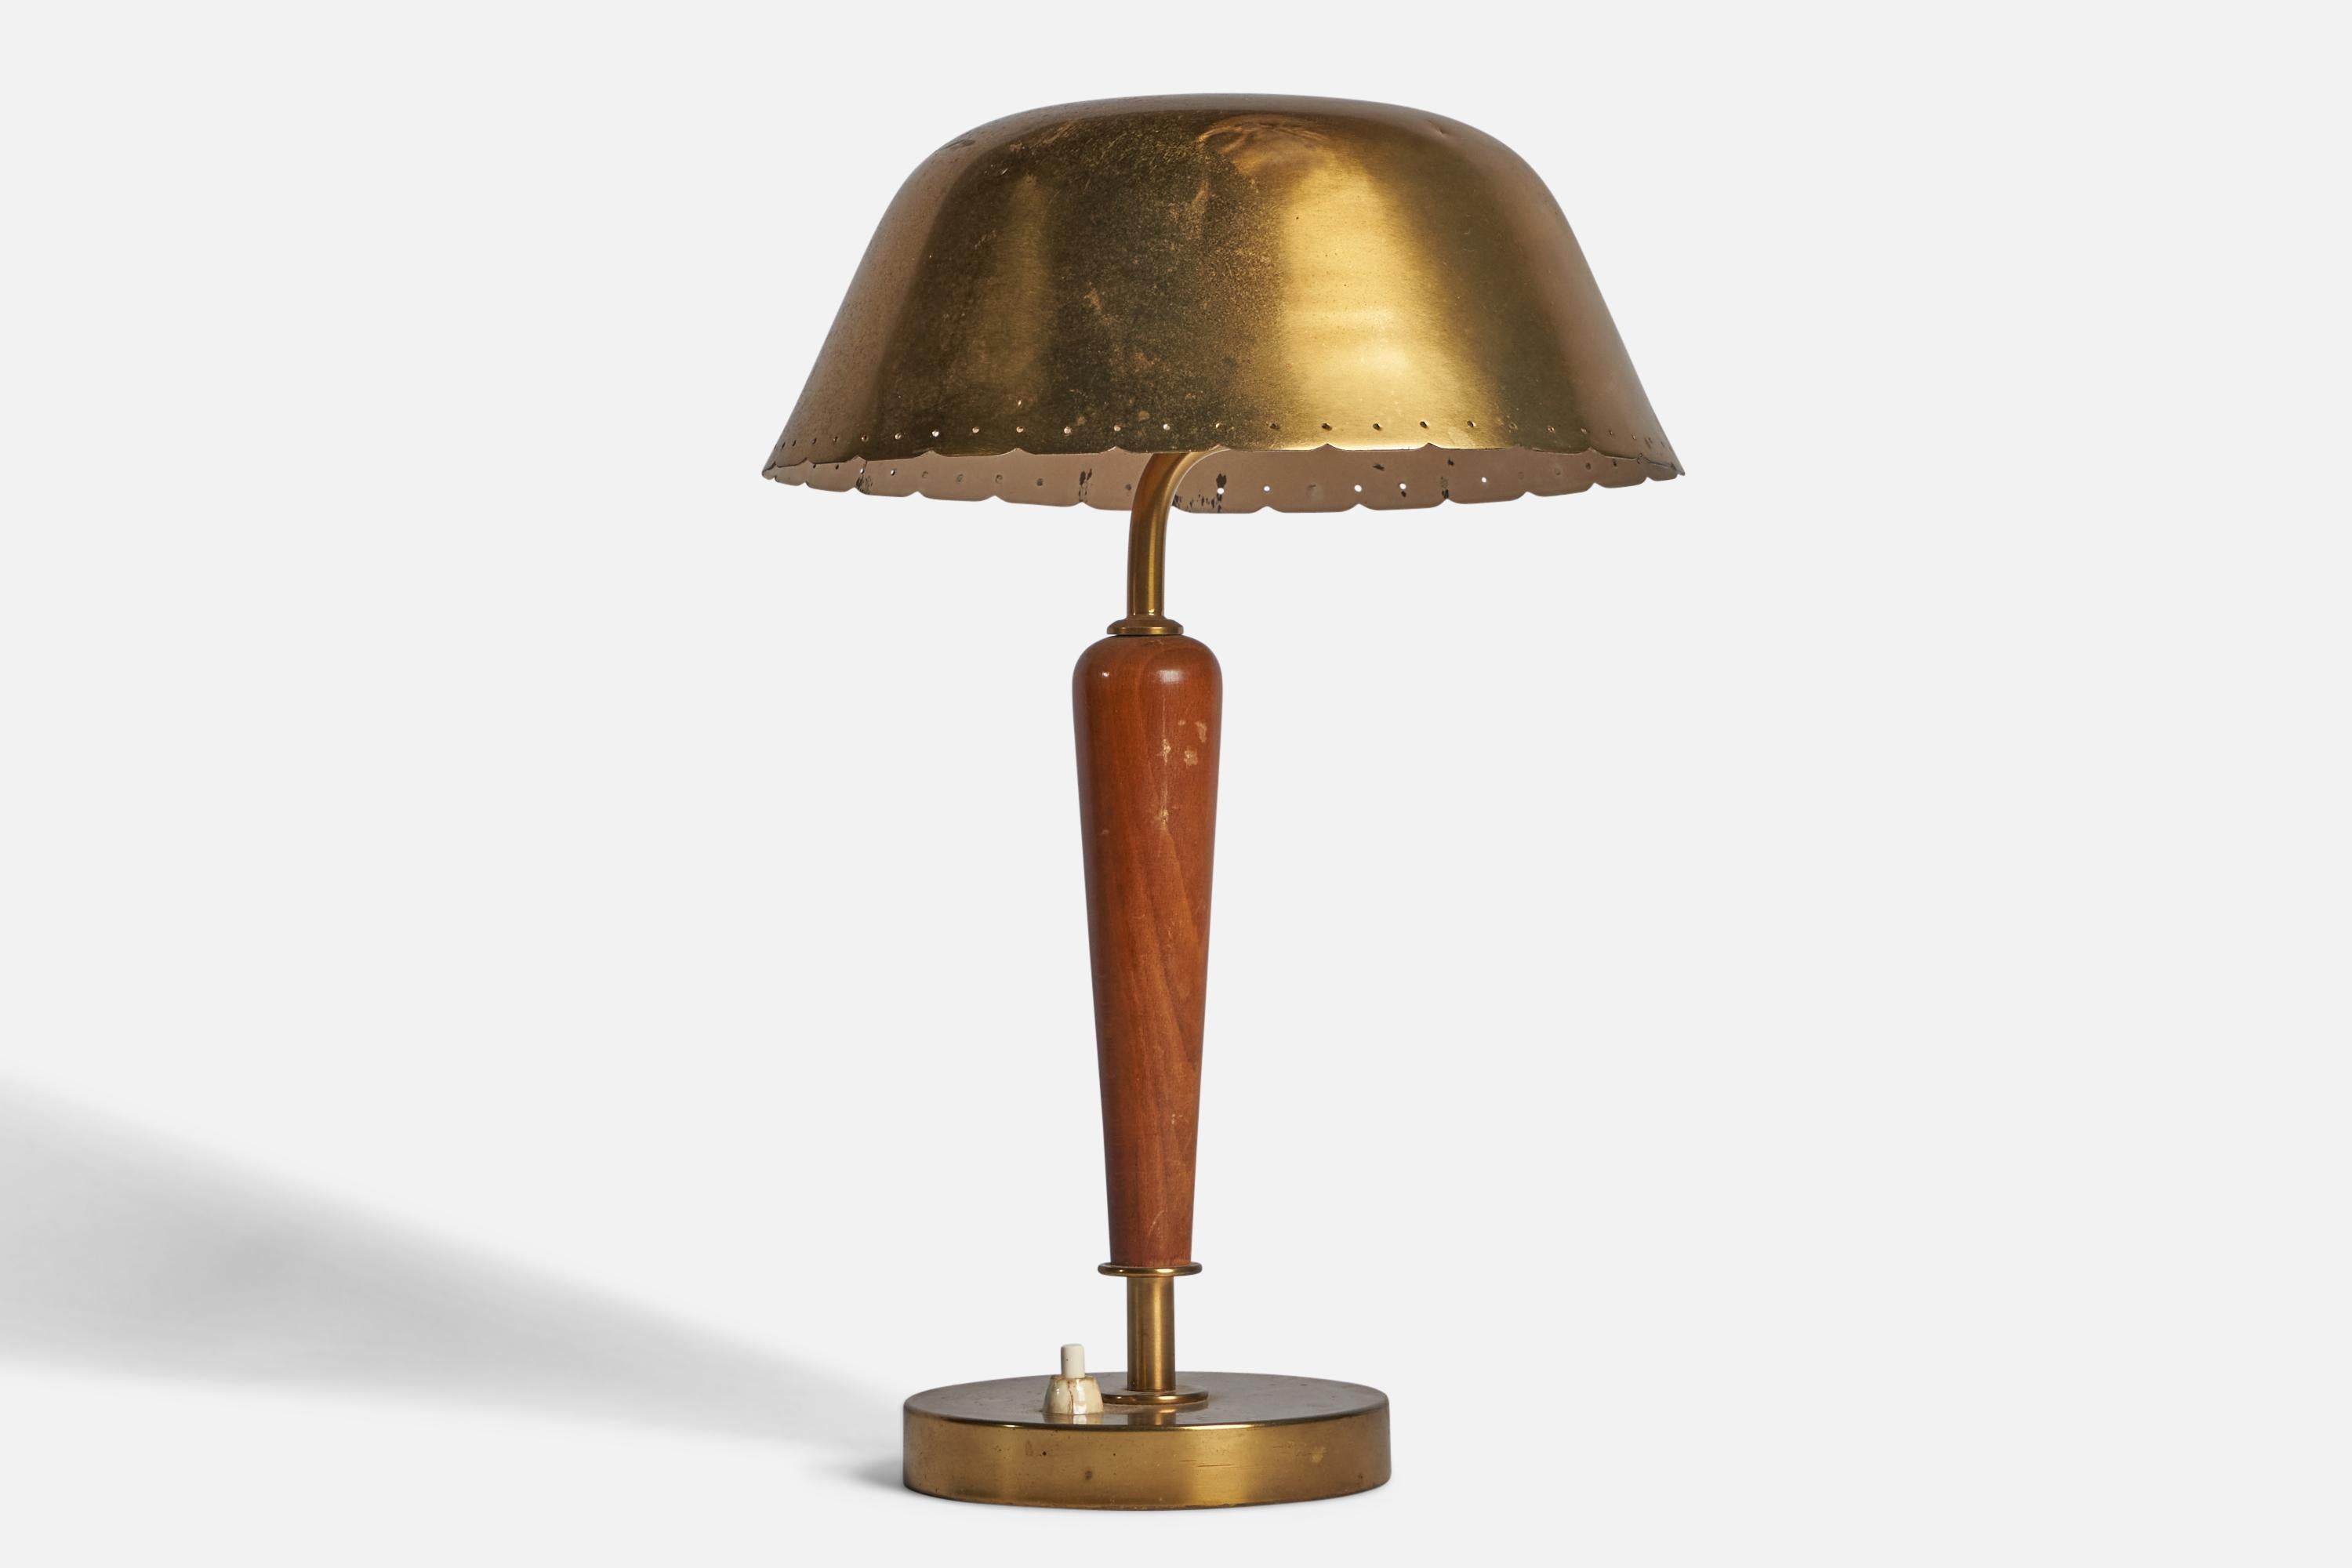 Lampe de table en laiton et orme teinté, conçue et produite en Suède, années 1930.

Dimensions globales (pouces) : 14.25